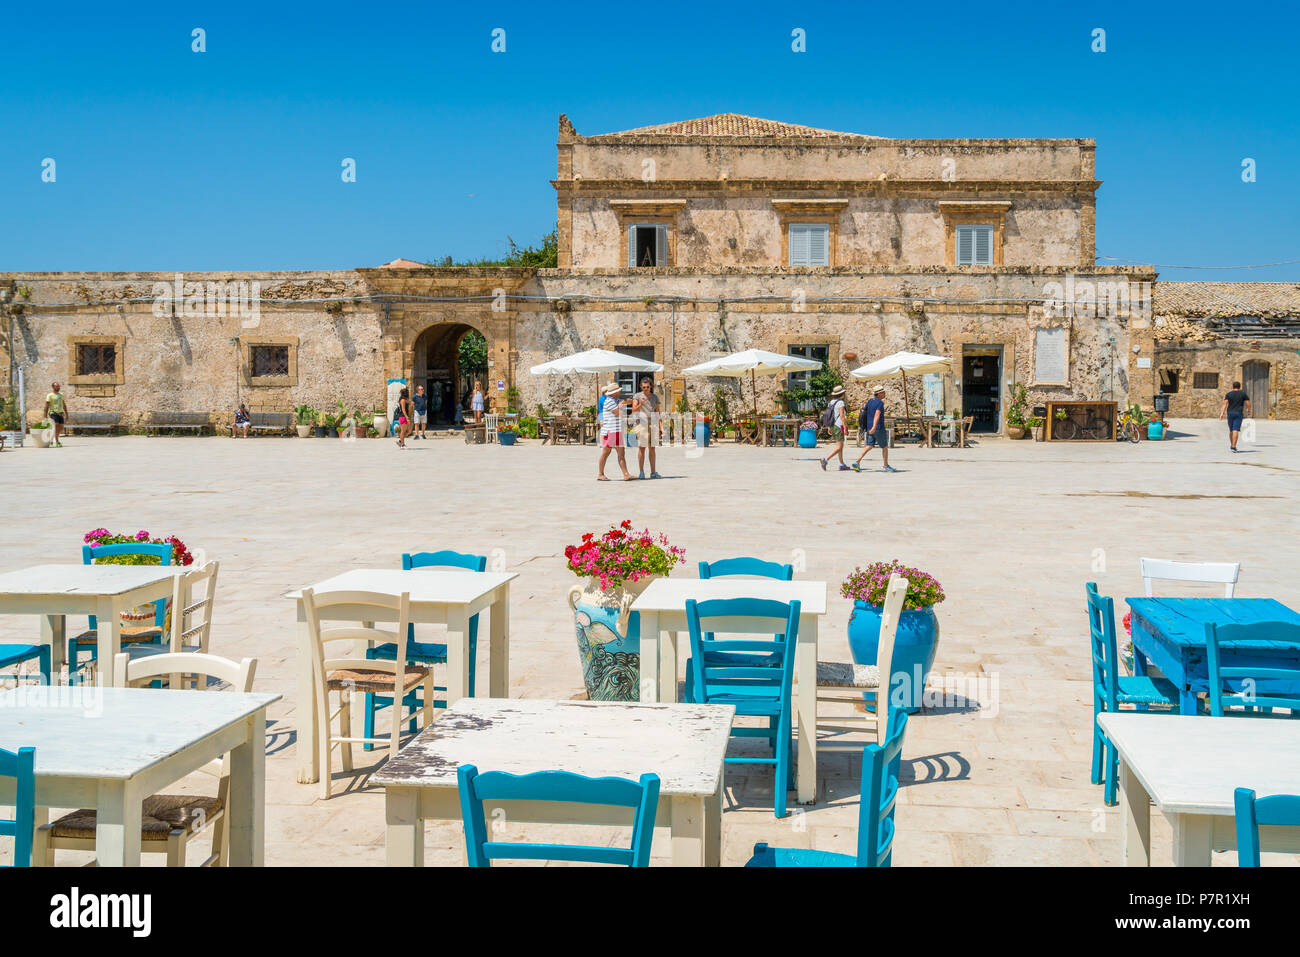 Il pittoresco villaggio di Marzamemi, nella provincia di Siracusa, in Sicilia. Foto Stock